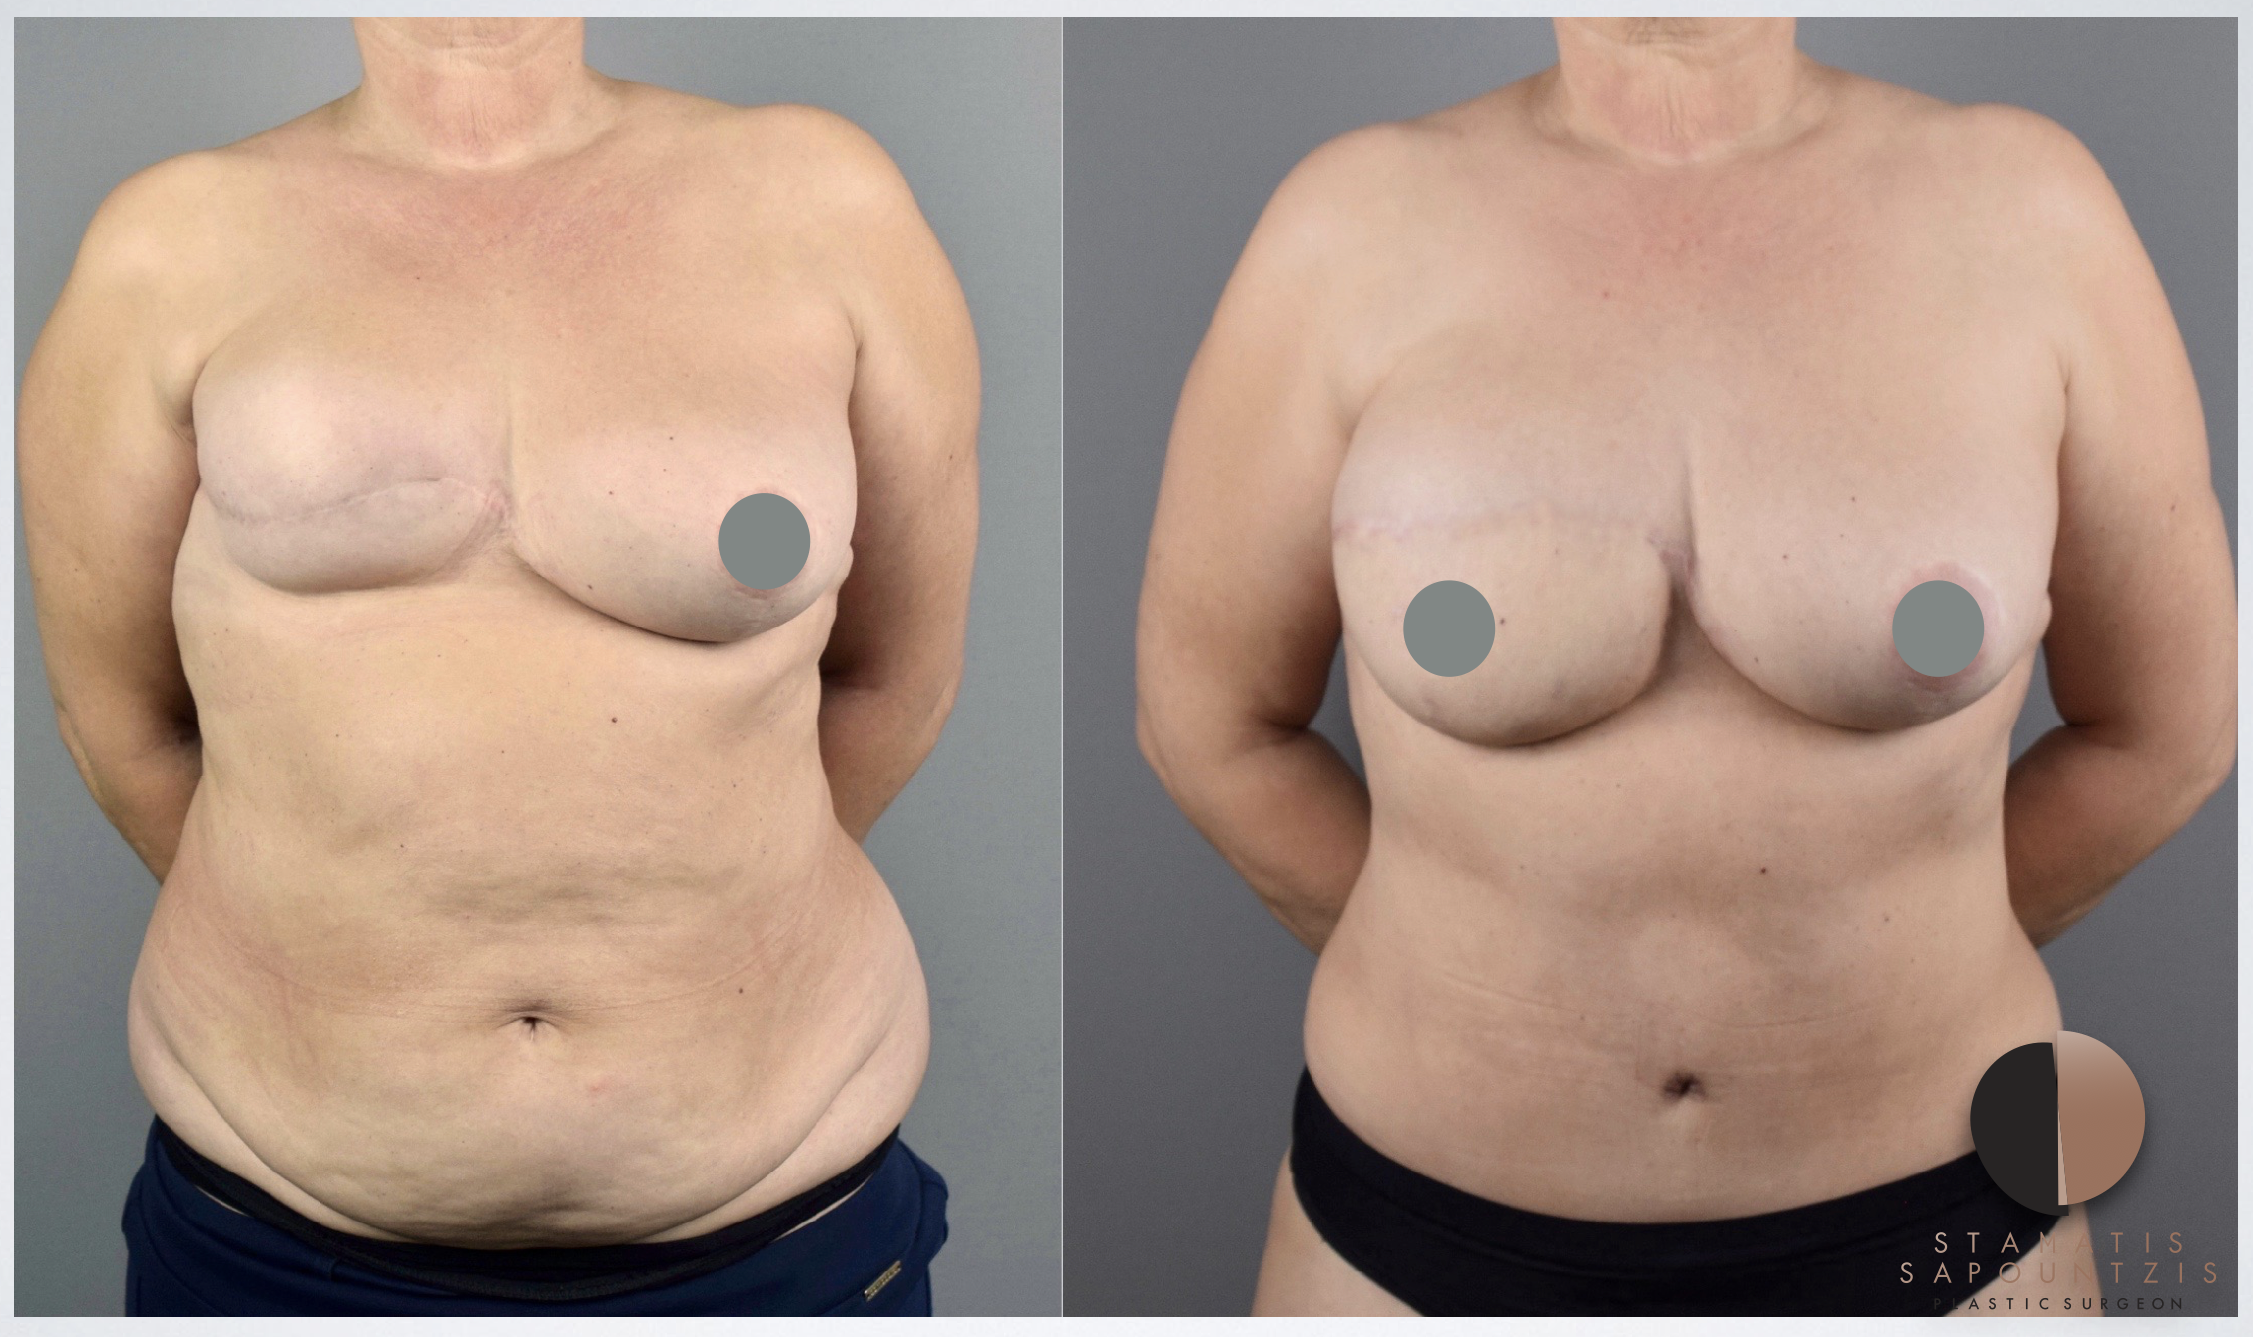 Αποκατάσταση μαστού μετά από μαστεκτομή χωρίς ενθέματα σιλικόνης με τη χρήση λίπους και δέρματος από την κοιλιά.